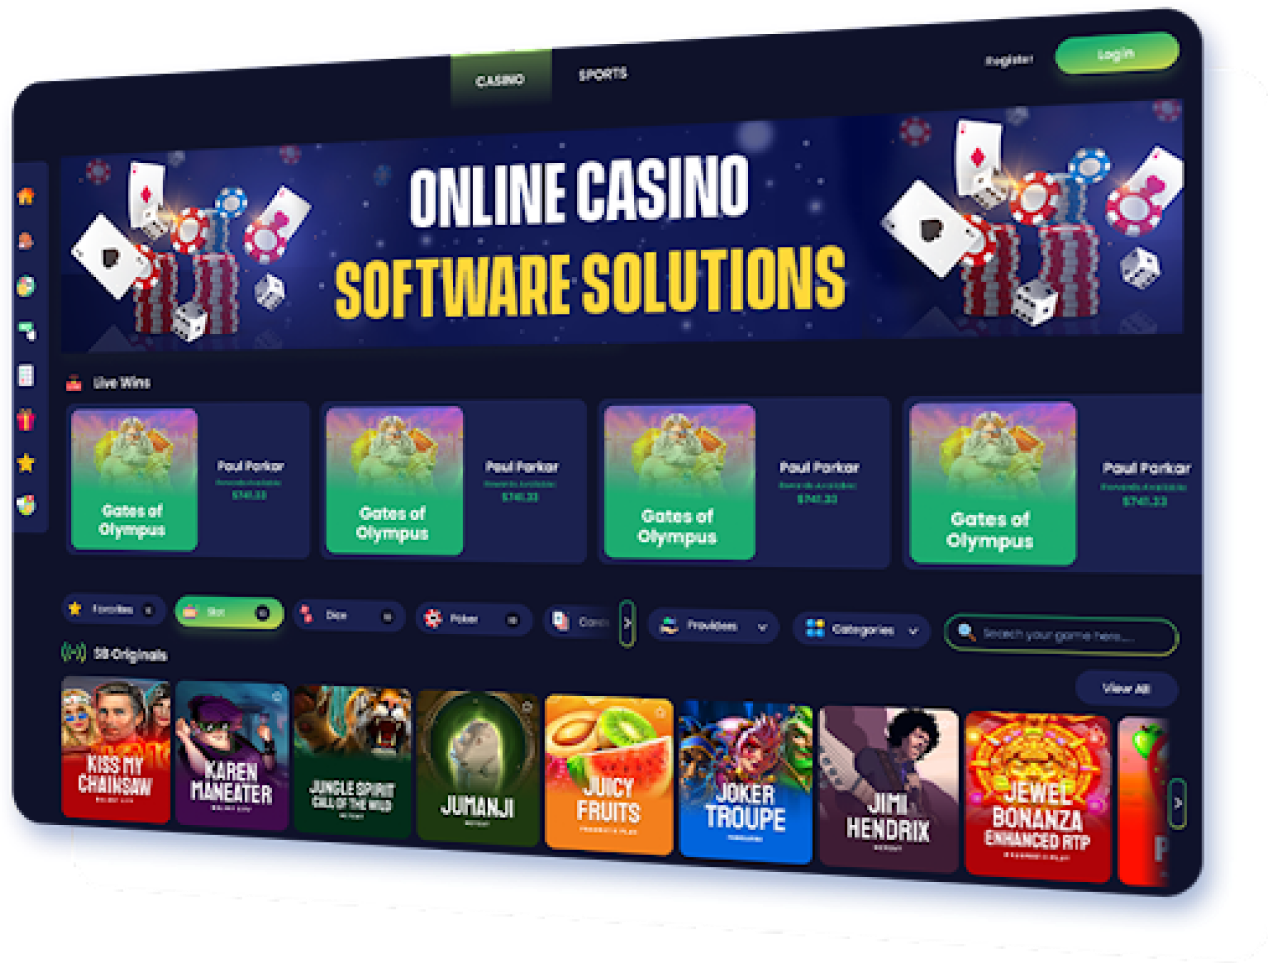 Online Casino API